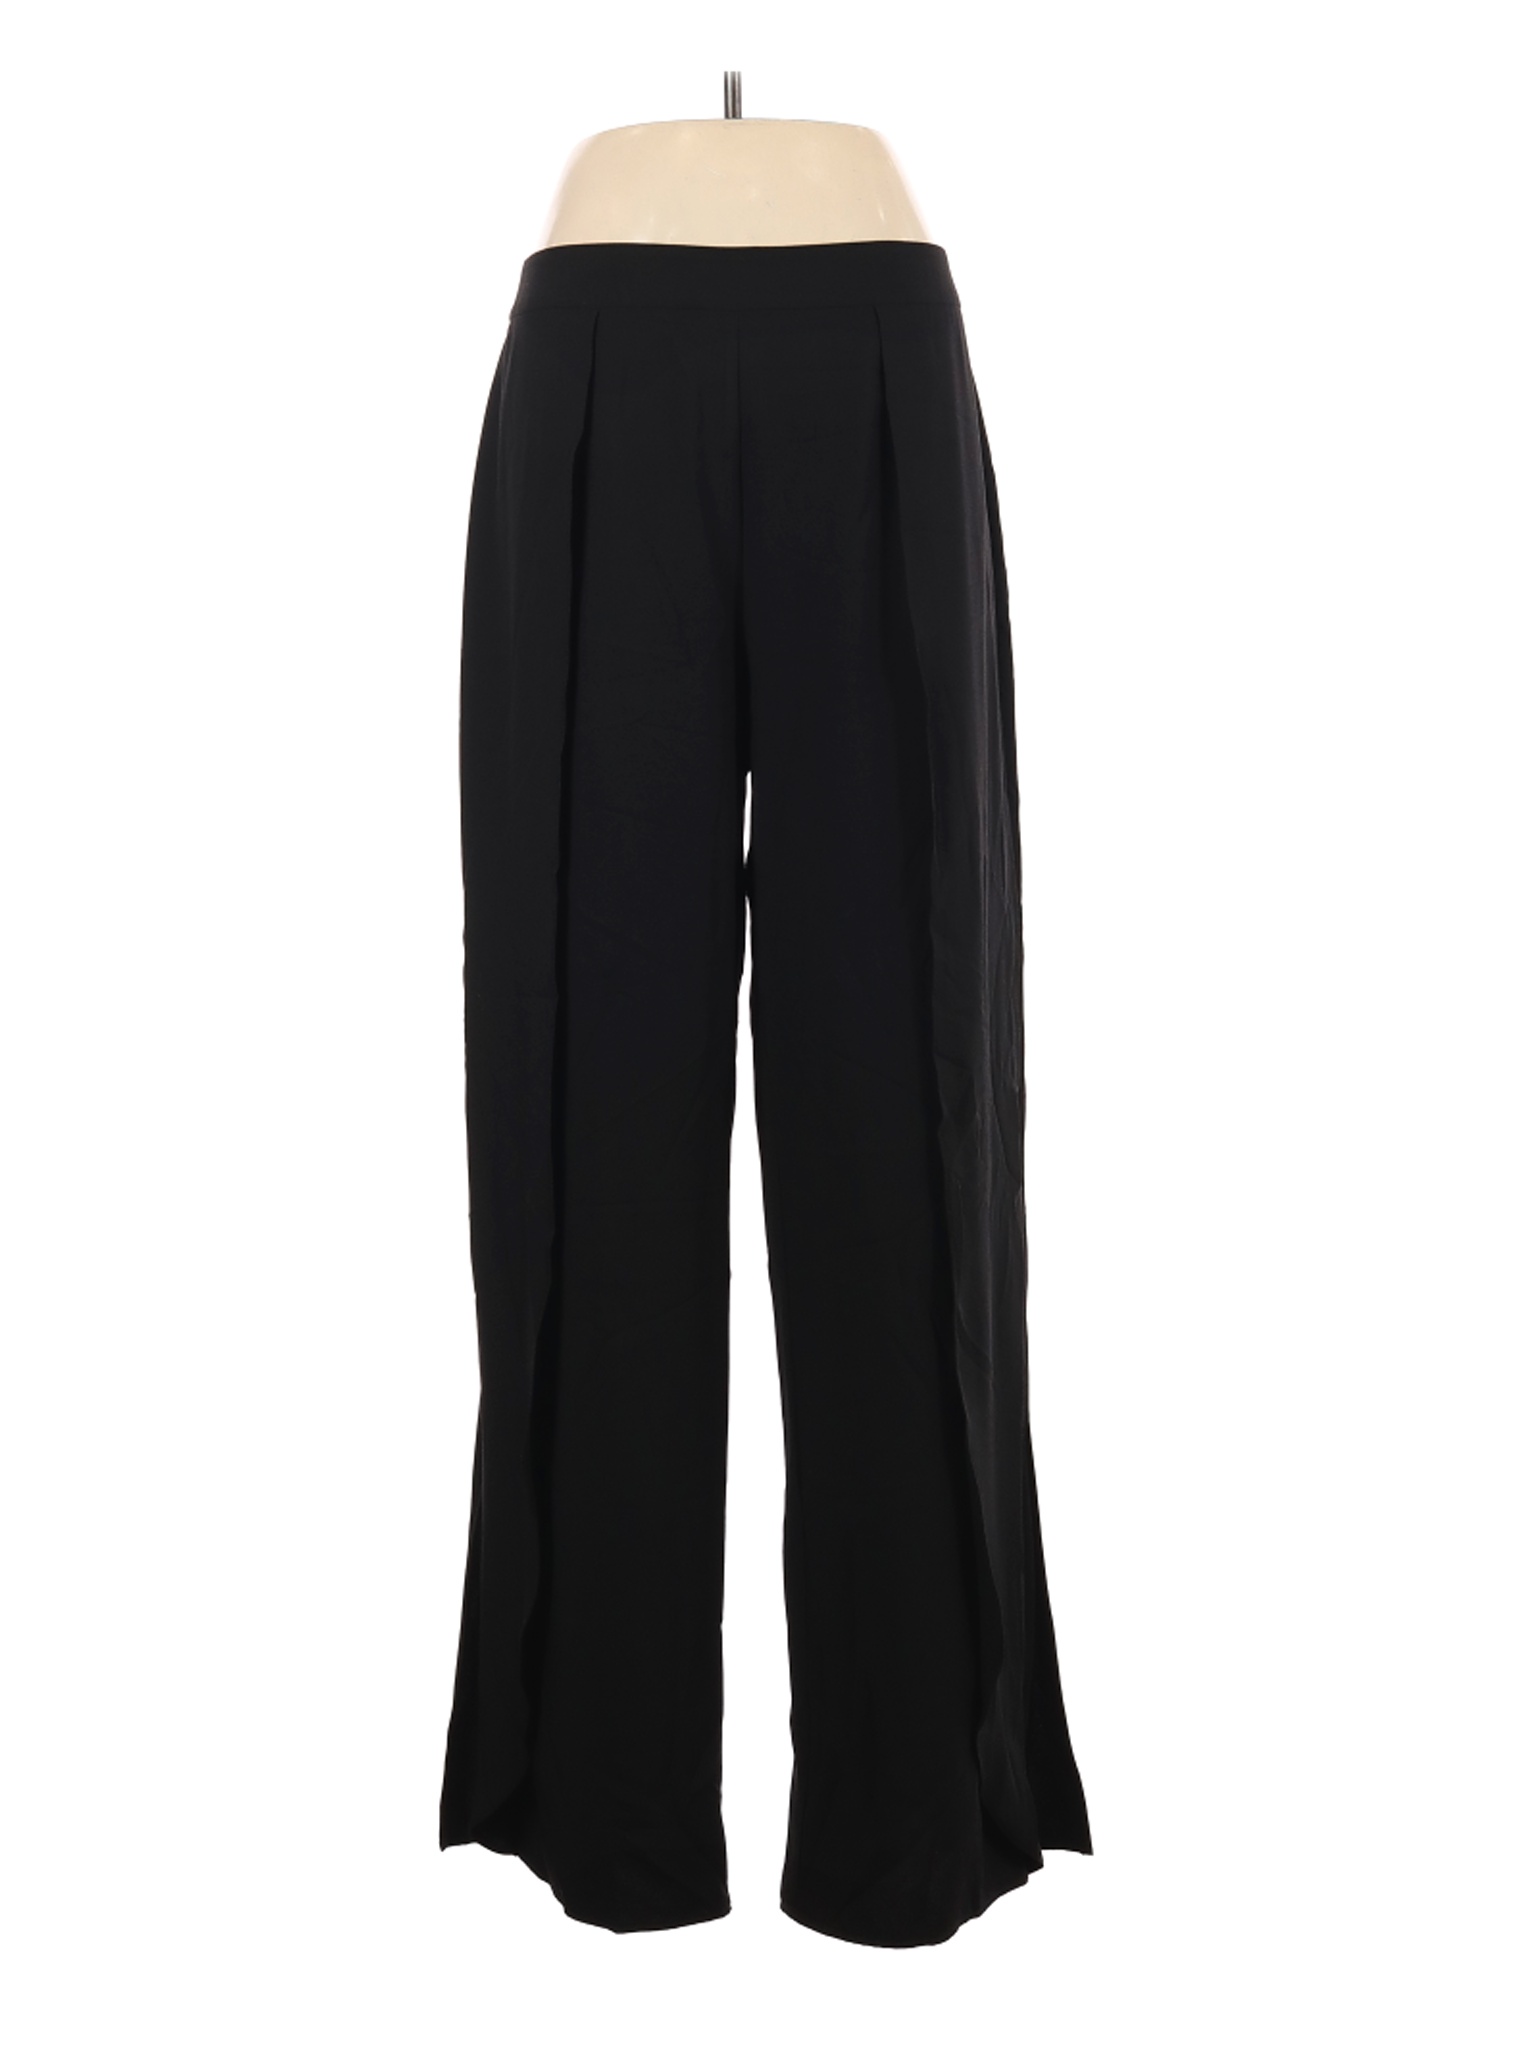 Ashley Stewart Women Black Dress Pants 16 Plus | eBay